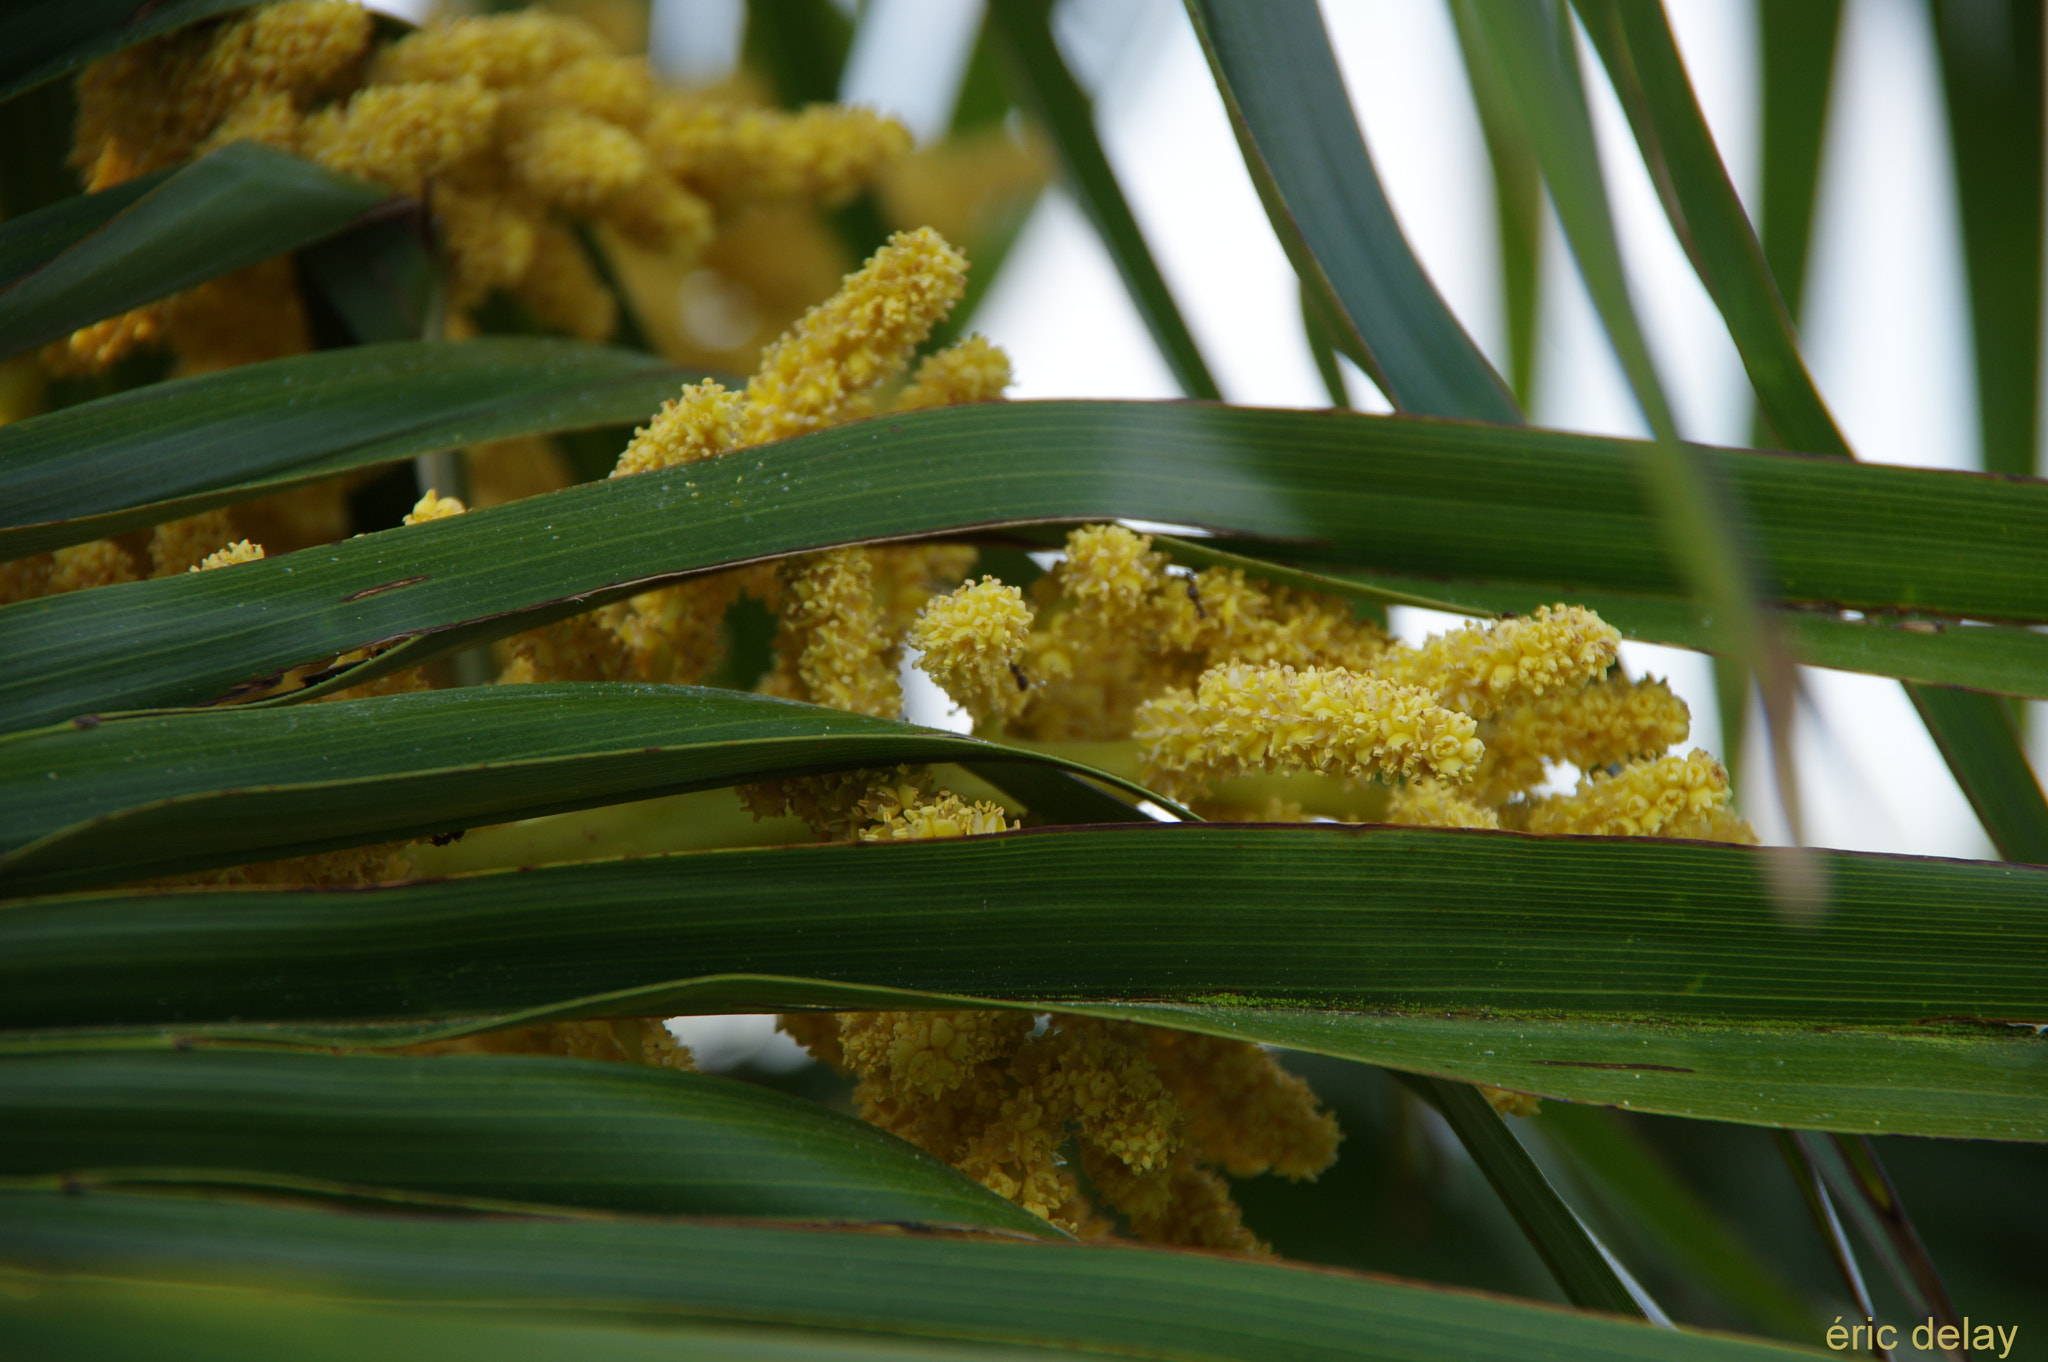 Pentax K-3 sample photo. Fleur de palmier photography